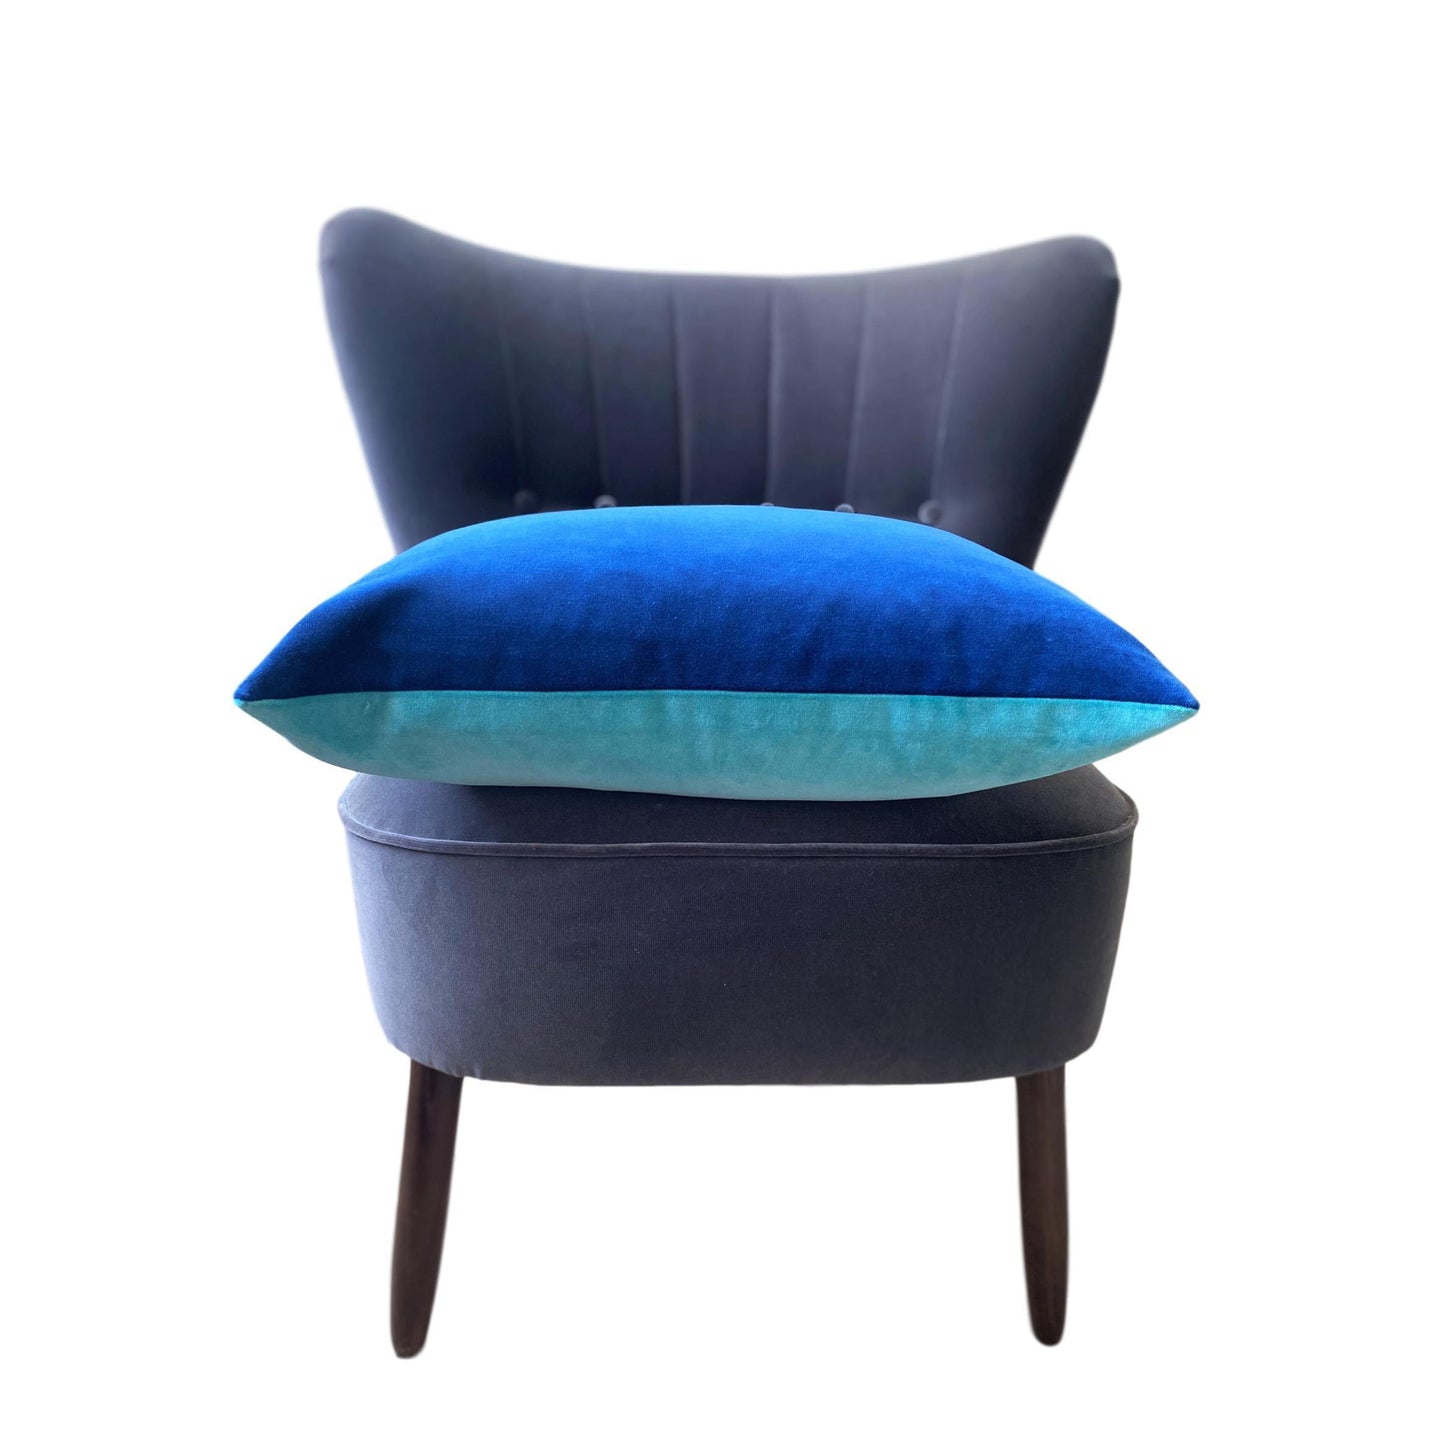 Cushions 50cm x 50cm in Turquoise velvet